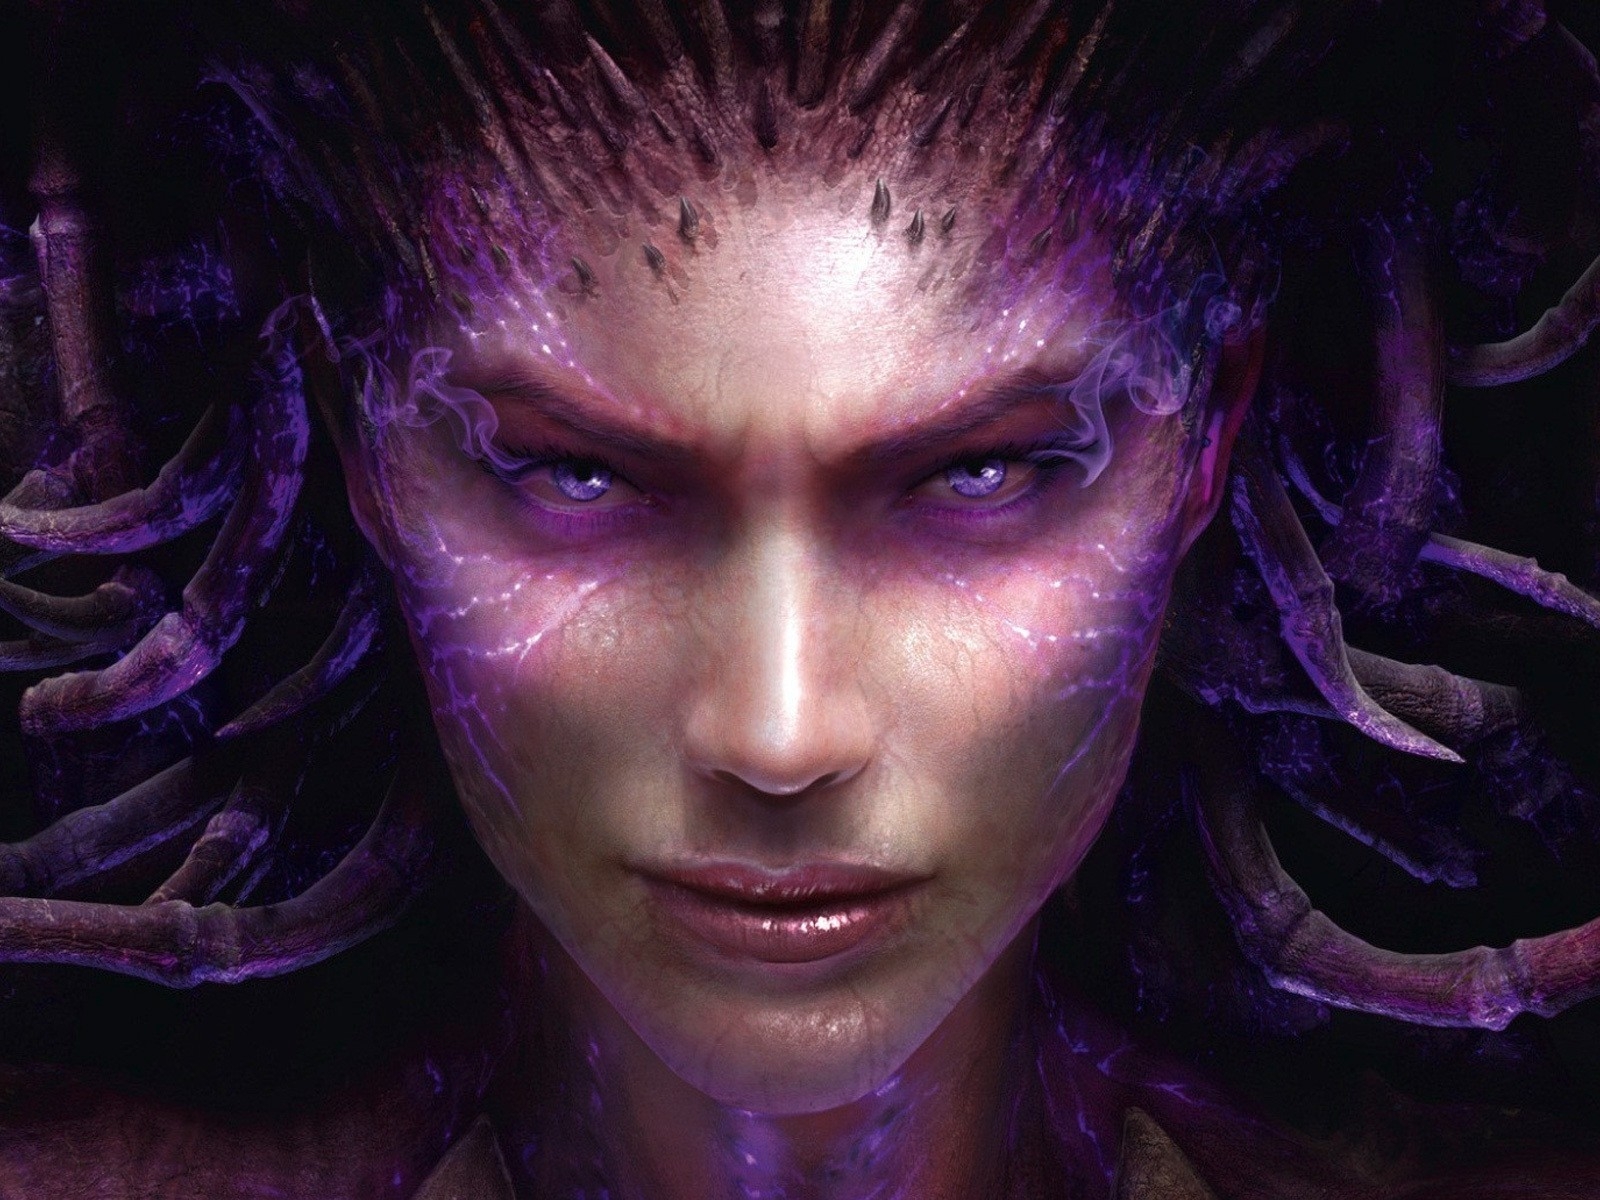 Sarah Kerrigan StarCraft 2 for 1600 x 1200 resolution